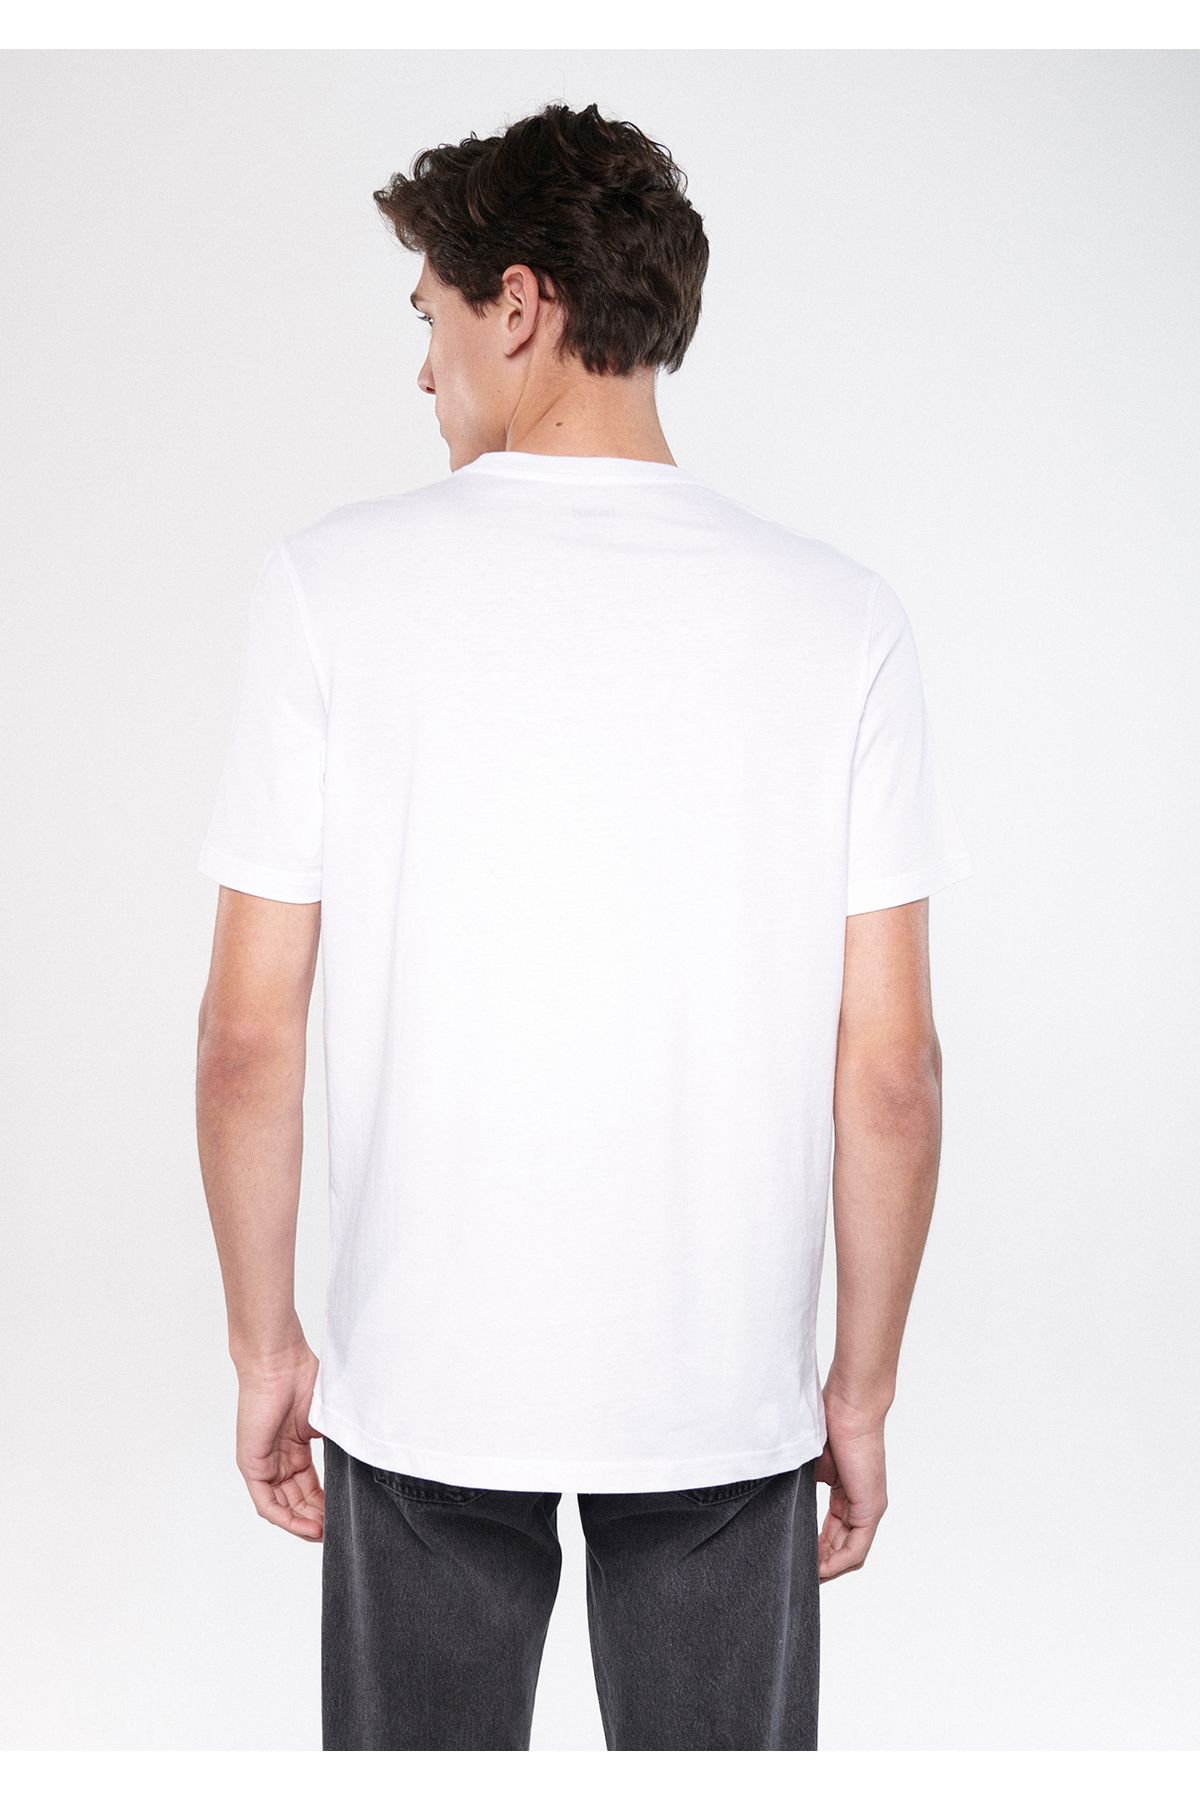 Mavi تی شرت سفید چاپی منحصر به فرد تناسب / برش باریک 8811474-620